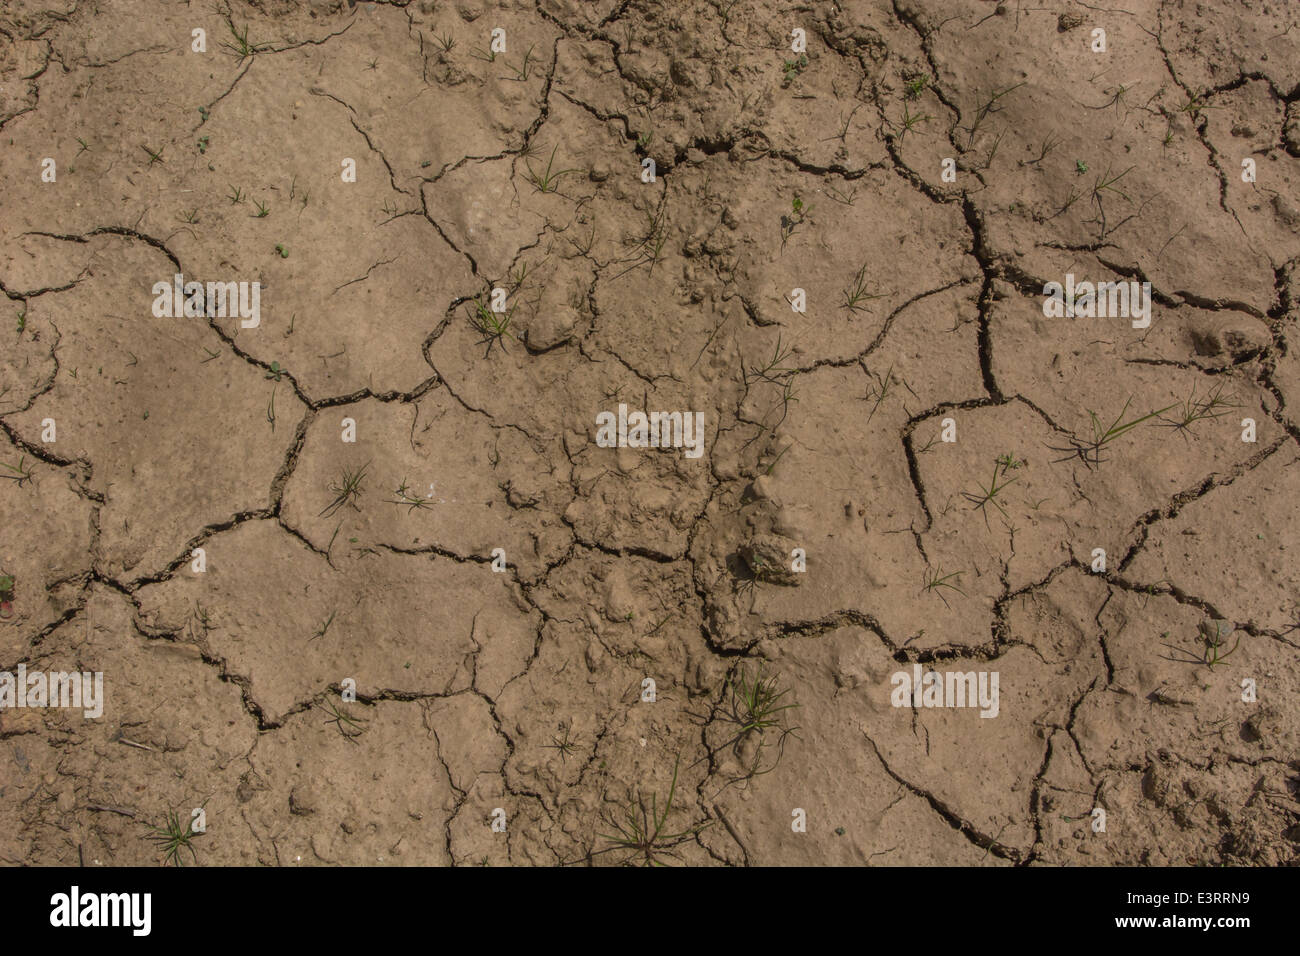 Royaume-uni / sécheresse des signes de pénurie d'eau en attendant que la boue des fissures dans la chaleur. Métaphore de concept vague de canicule, les cultures, la crise de l'eau, l'été chaud et sec Banque D'Images